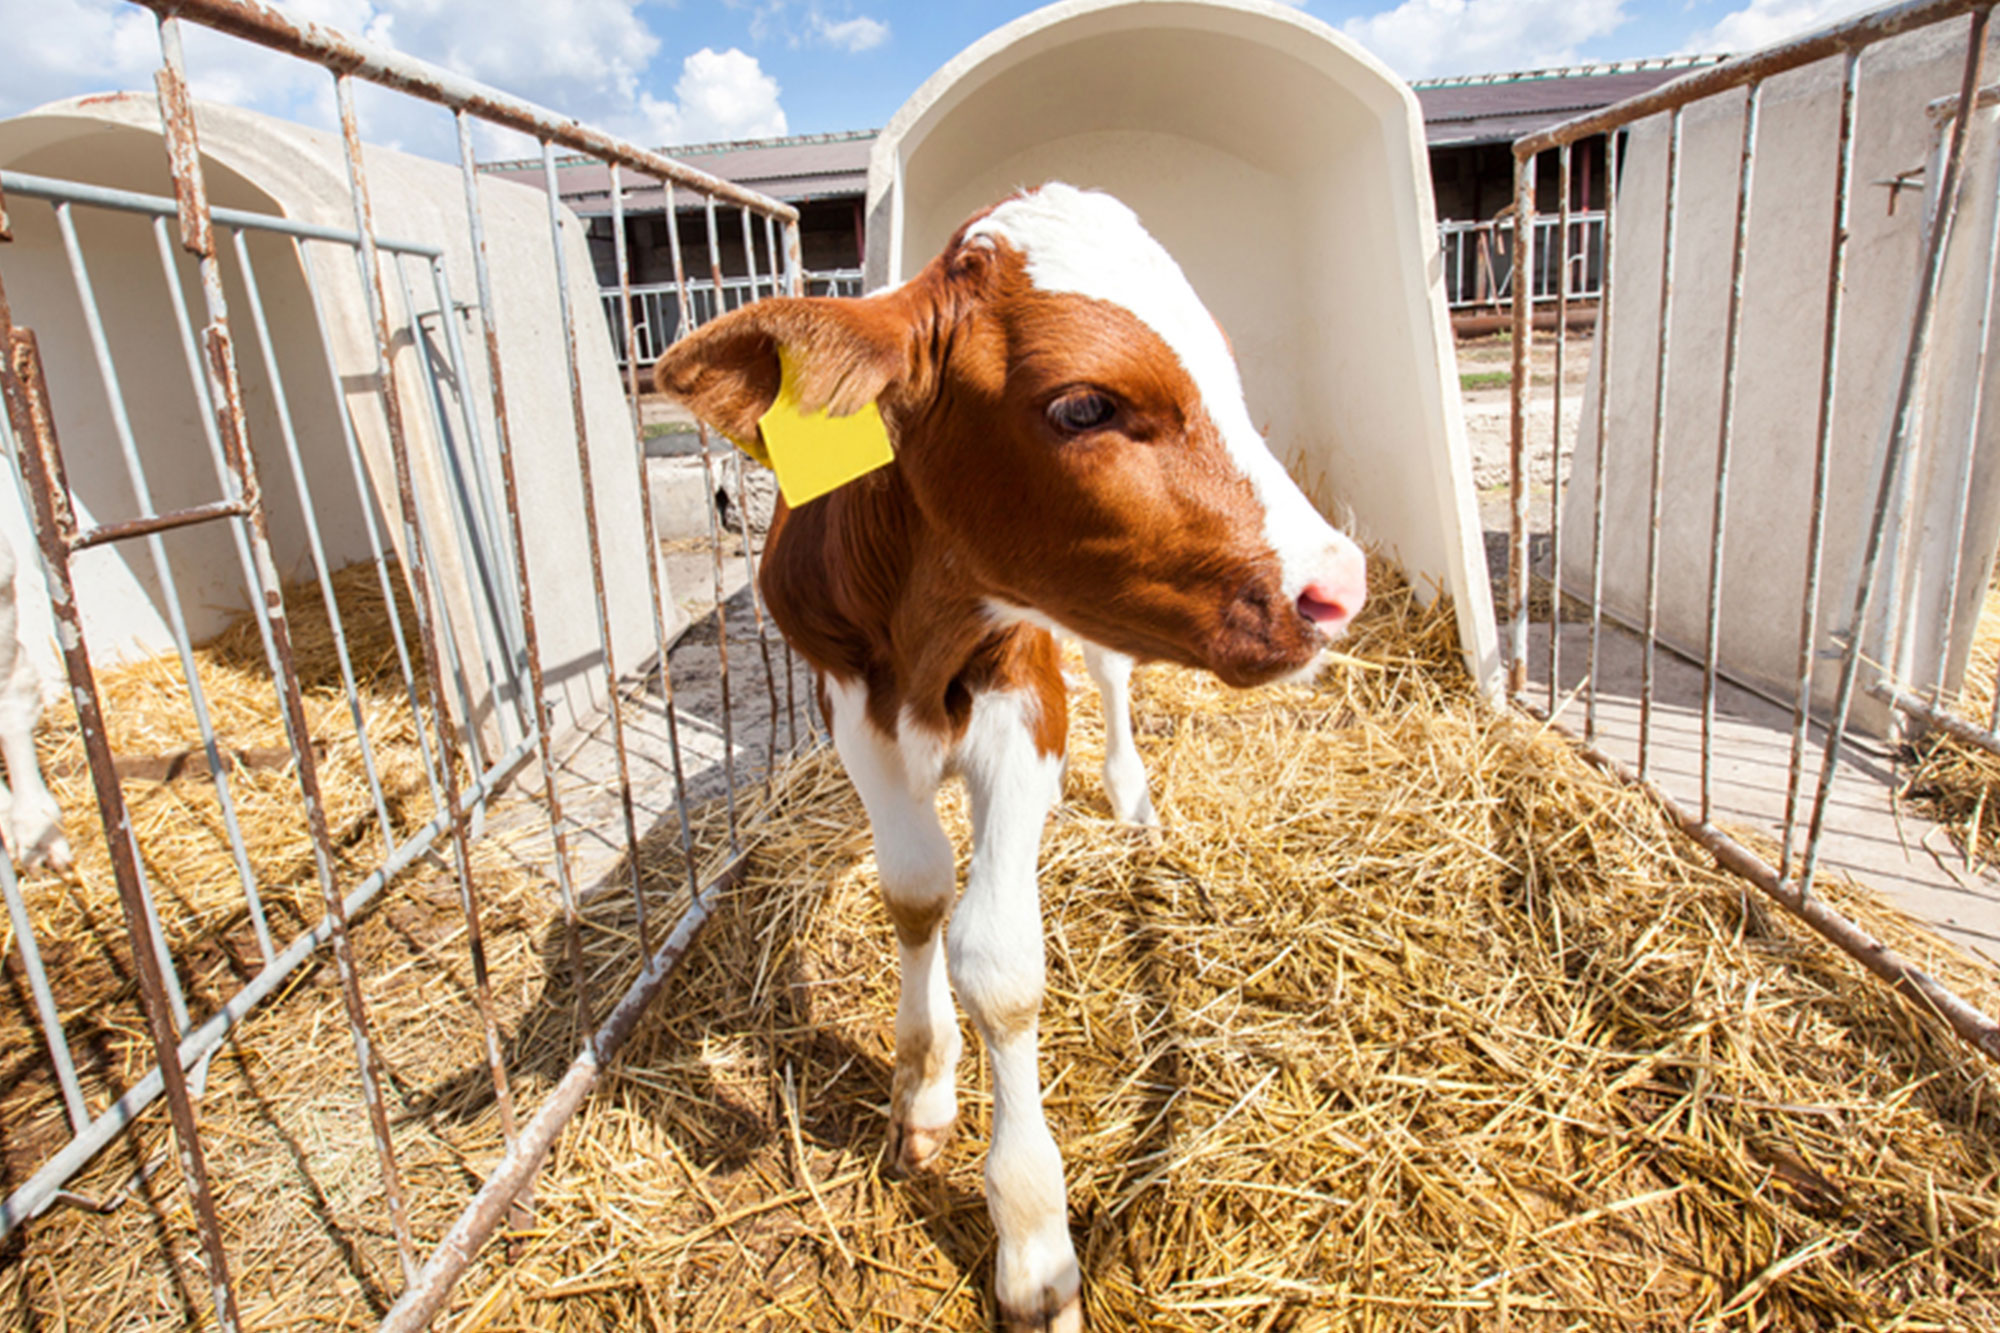 Image of a calf in a farm pen